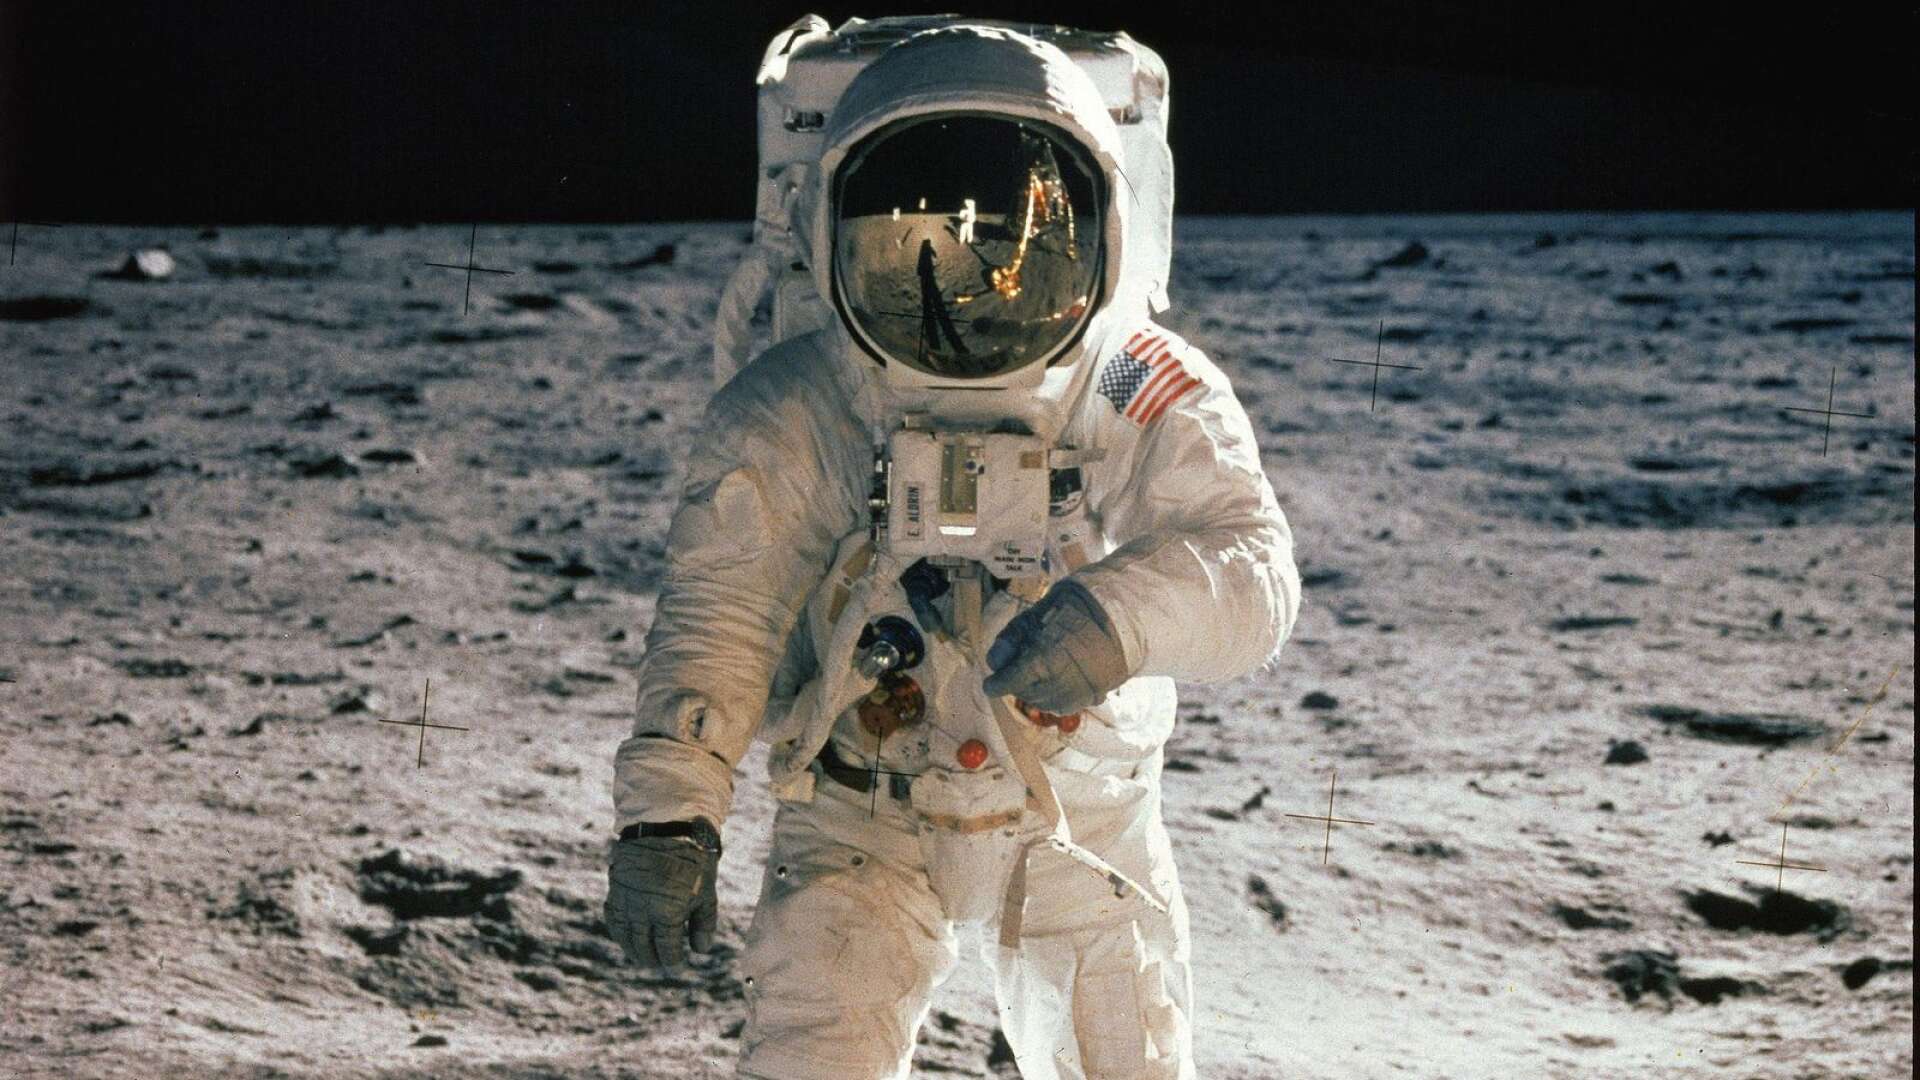 Klocka 21.17 den 20 juli 1969 tog de mark. Och för första gången var det människor på månen. Inget annat ögonblick i rymdforskningens historia kan konkurrera med denna händelse.